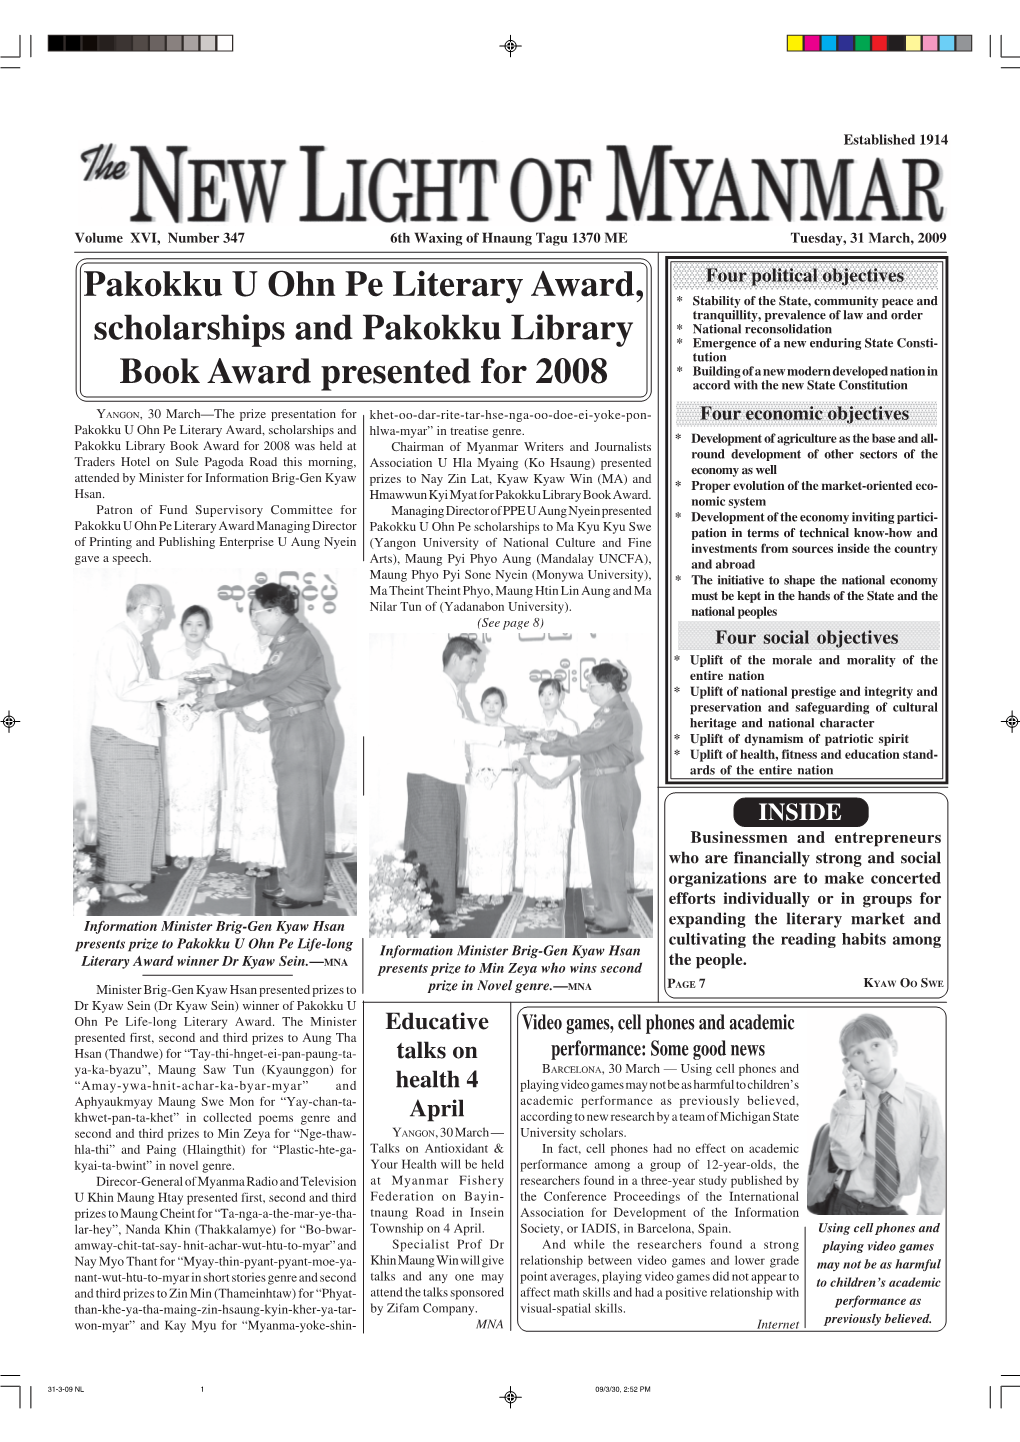 Pakokku U Ohn Pe Literary Award, Scholarships and Pakokku Library